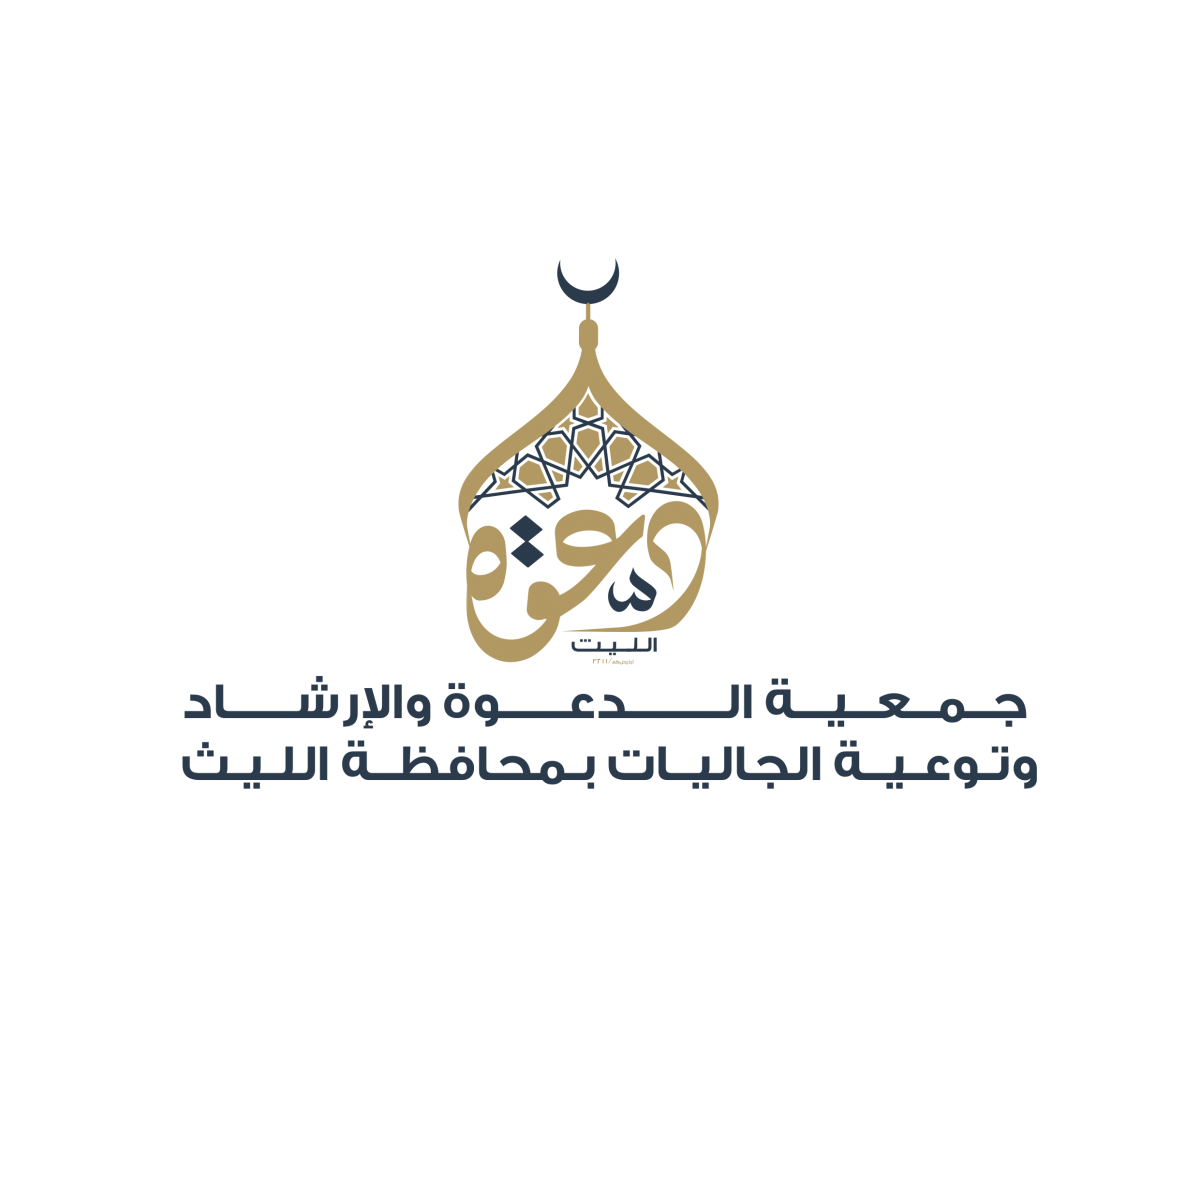 جمعية الدعوة والإرشاد وتوعية الجاليات بمحافظة الليث